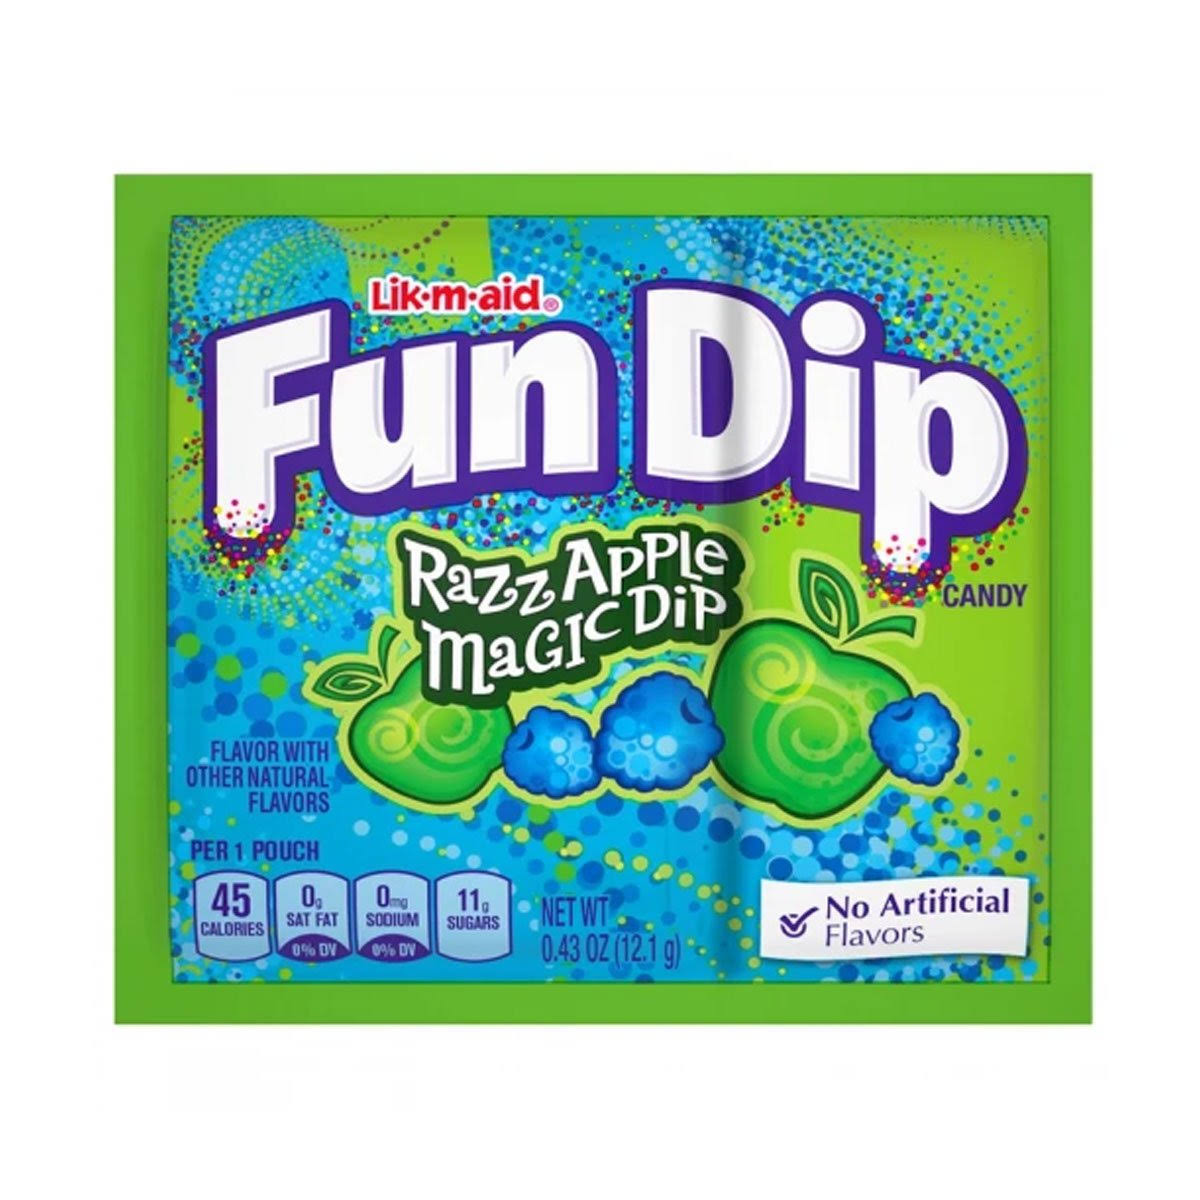 Lik-M-Aid Fun Dip Razz Apple Magic Dip 0.43oz